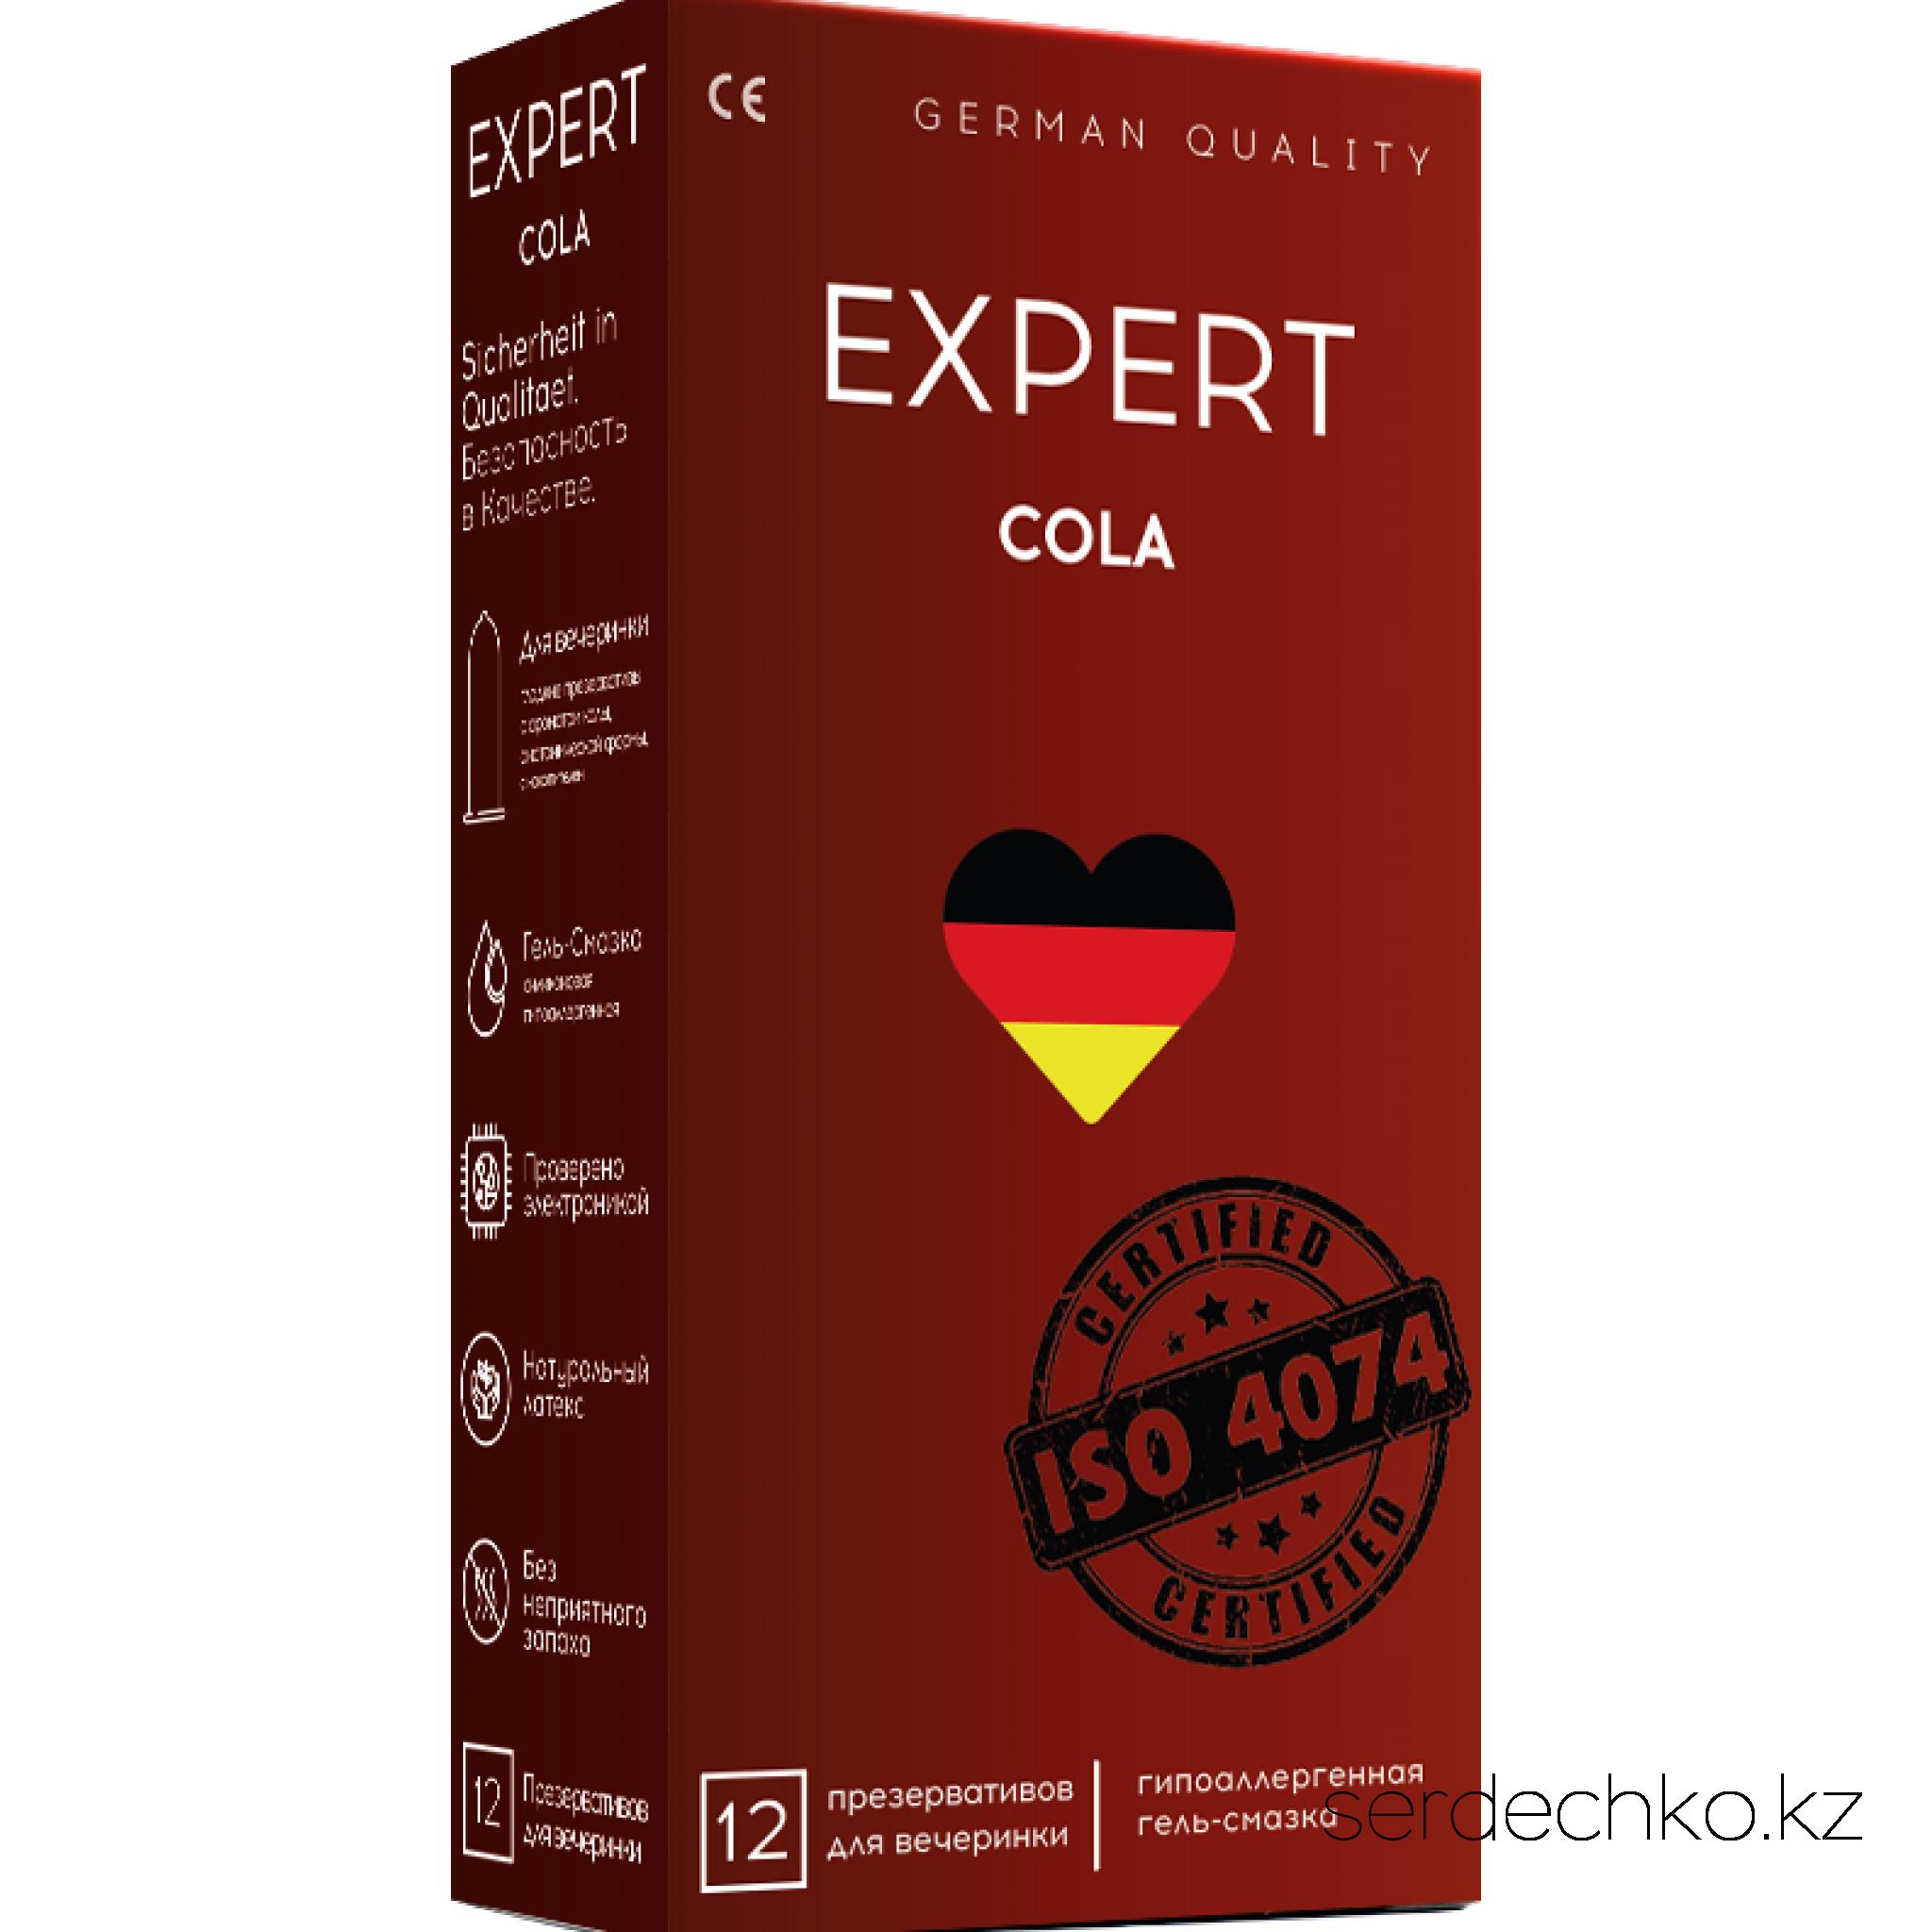 ПРЕЗЕРВАТИВЫ EXPERT COLA № 12 (С АРОМАТОМ КОЛЫ), 12 штук, 
	Cola - Гладкие латексные презервативы,  обработанные силиконовой смазкой с ароматом  колы.
